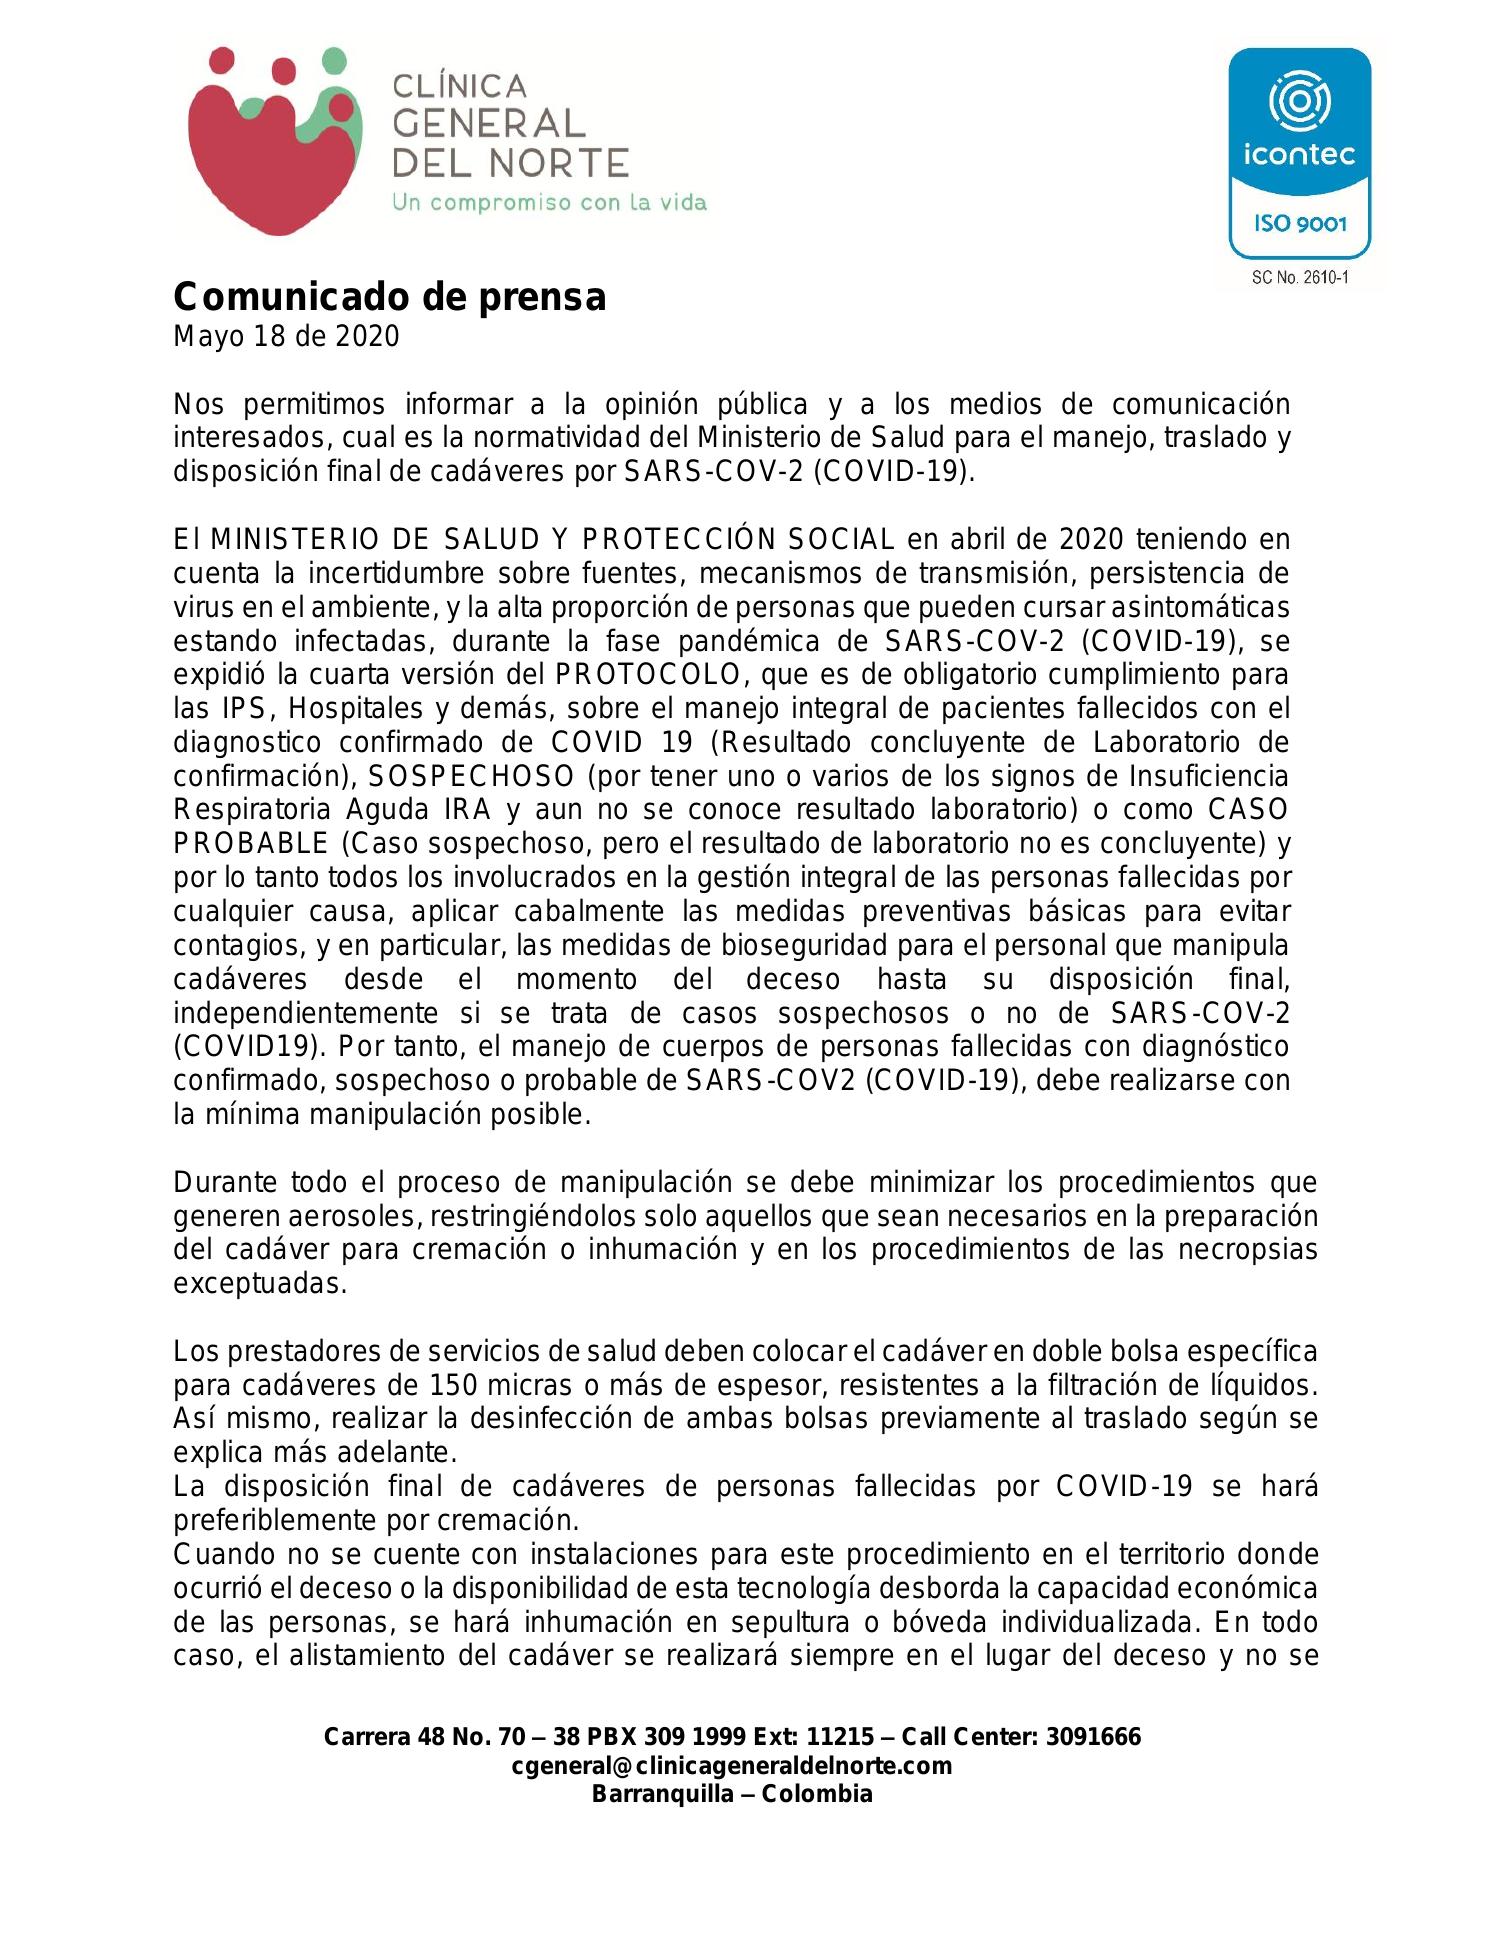 Comunicado De Prensa Mayo De Copia Pdf Docdroid